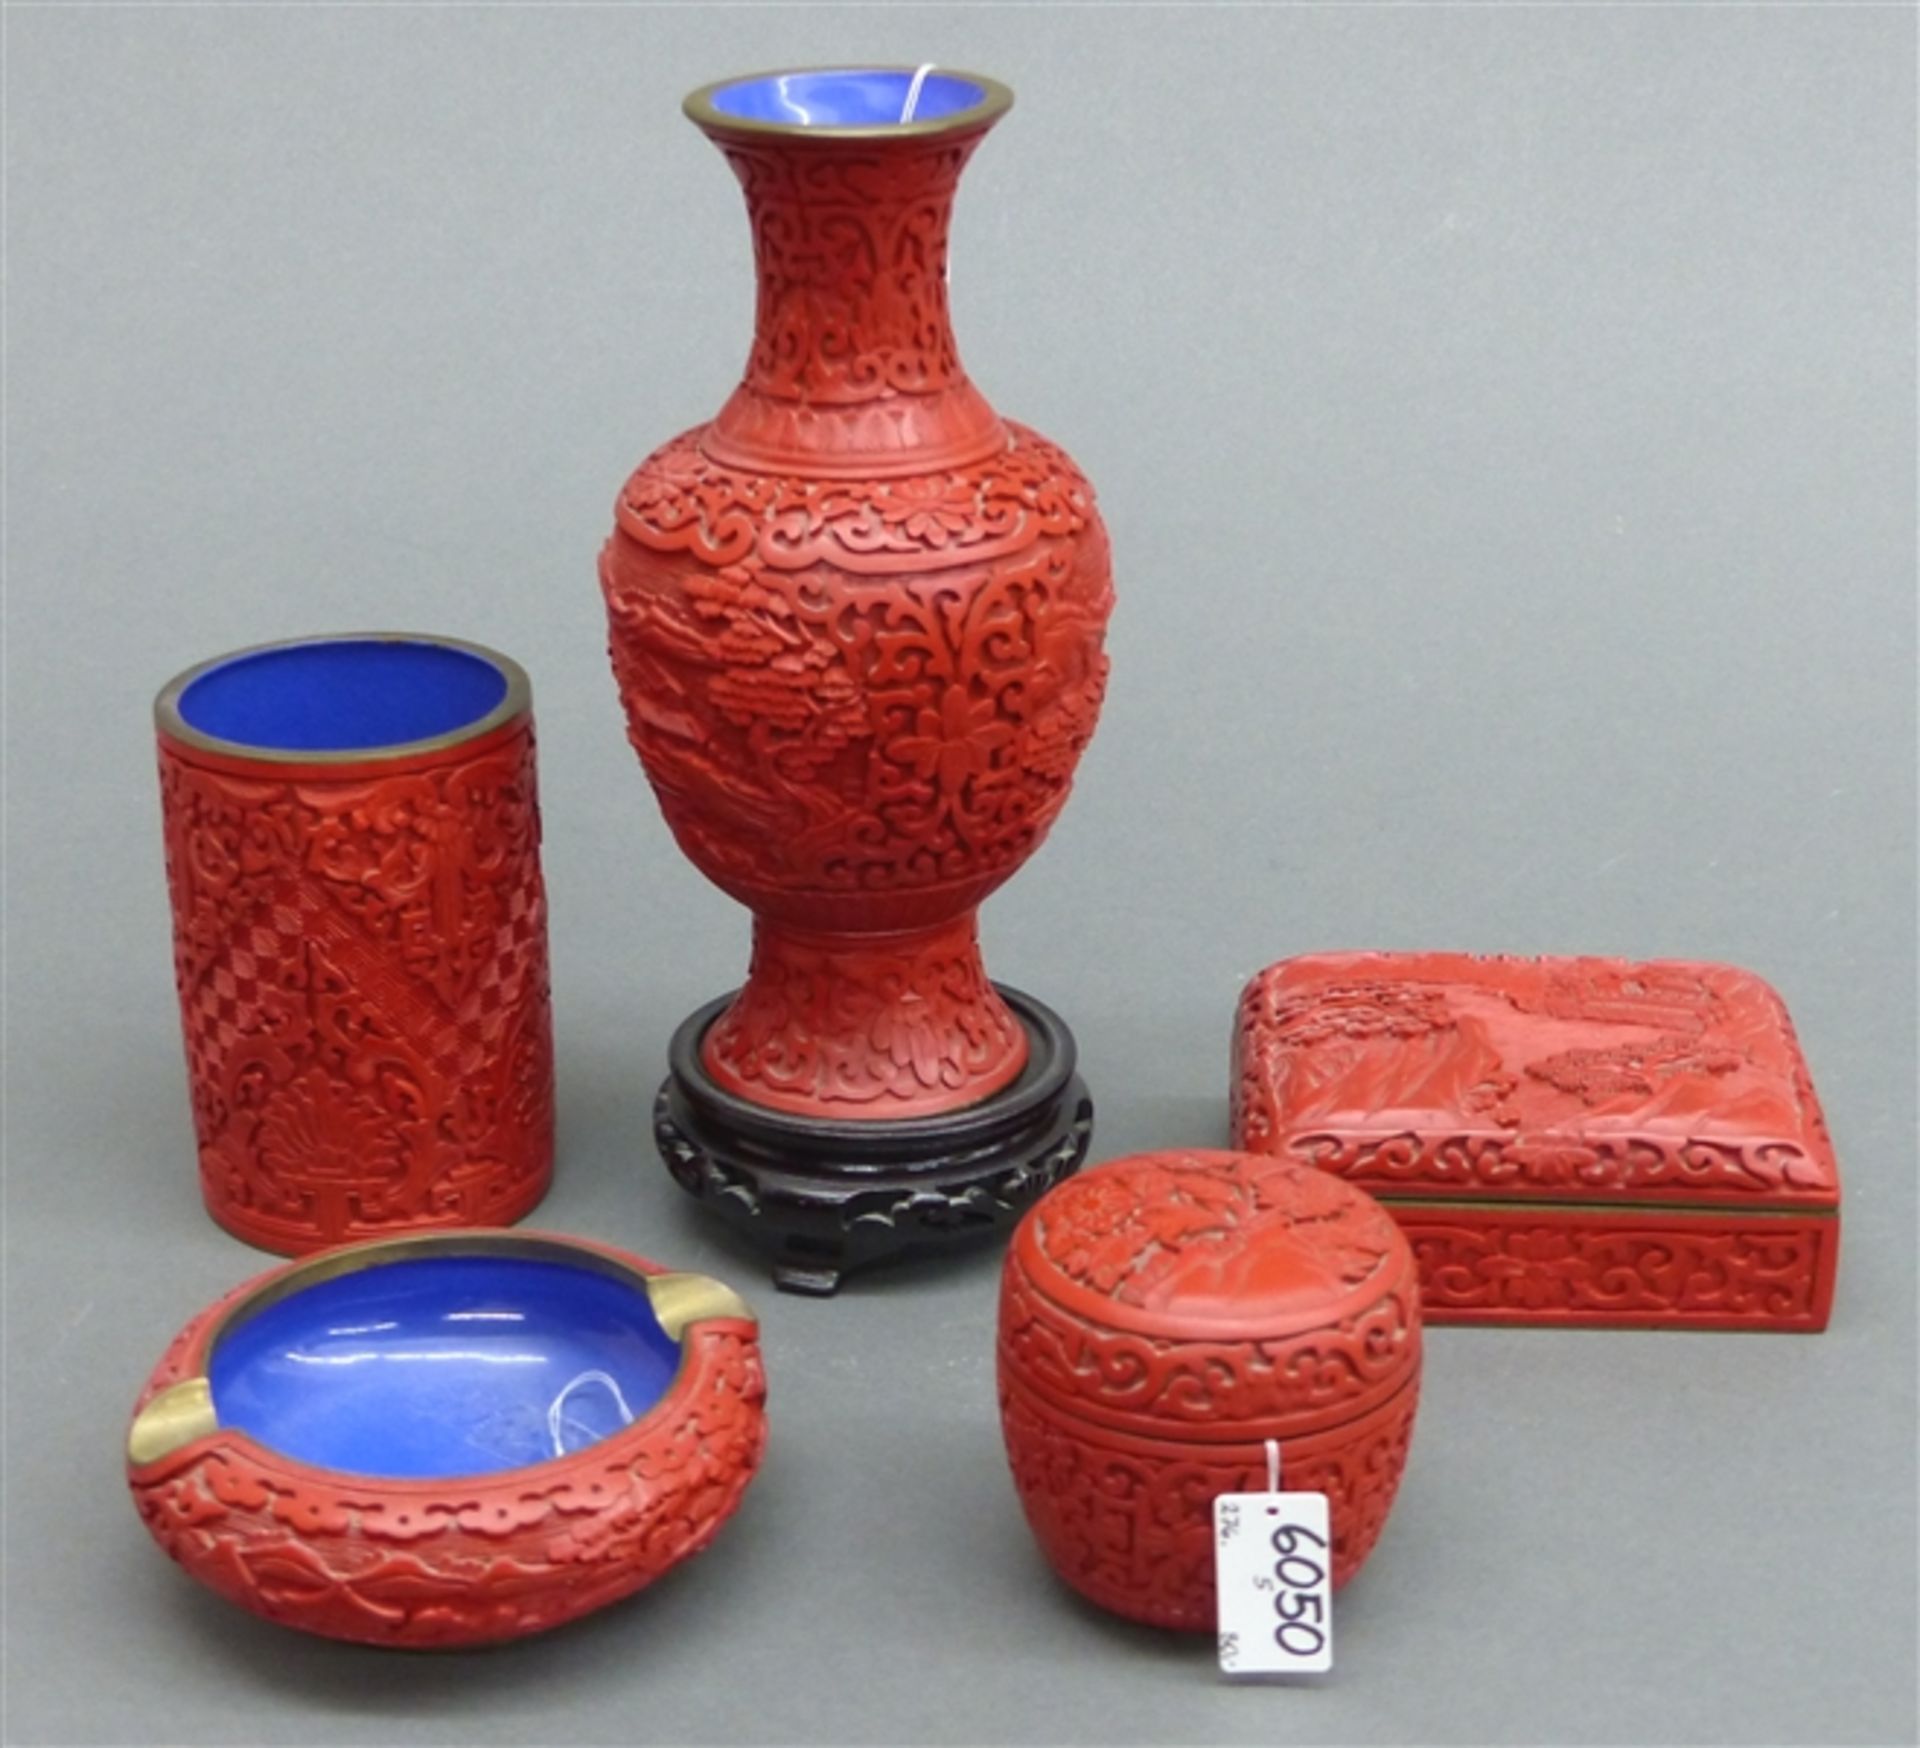 Konvolut China, Rotlackarbeiten, 5 St., 2 Vasen, 1 Ascher, 2 Dosen, 20. Jh., h 4-22 cm,